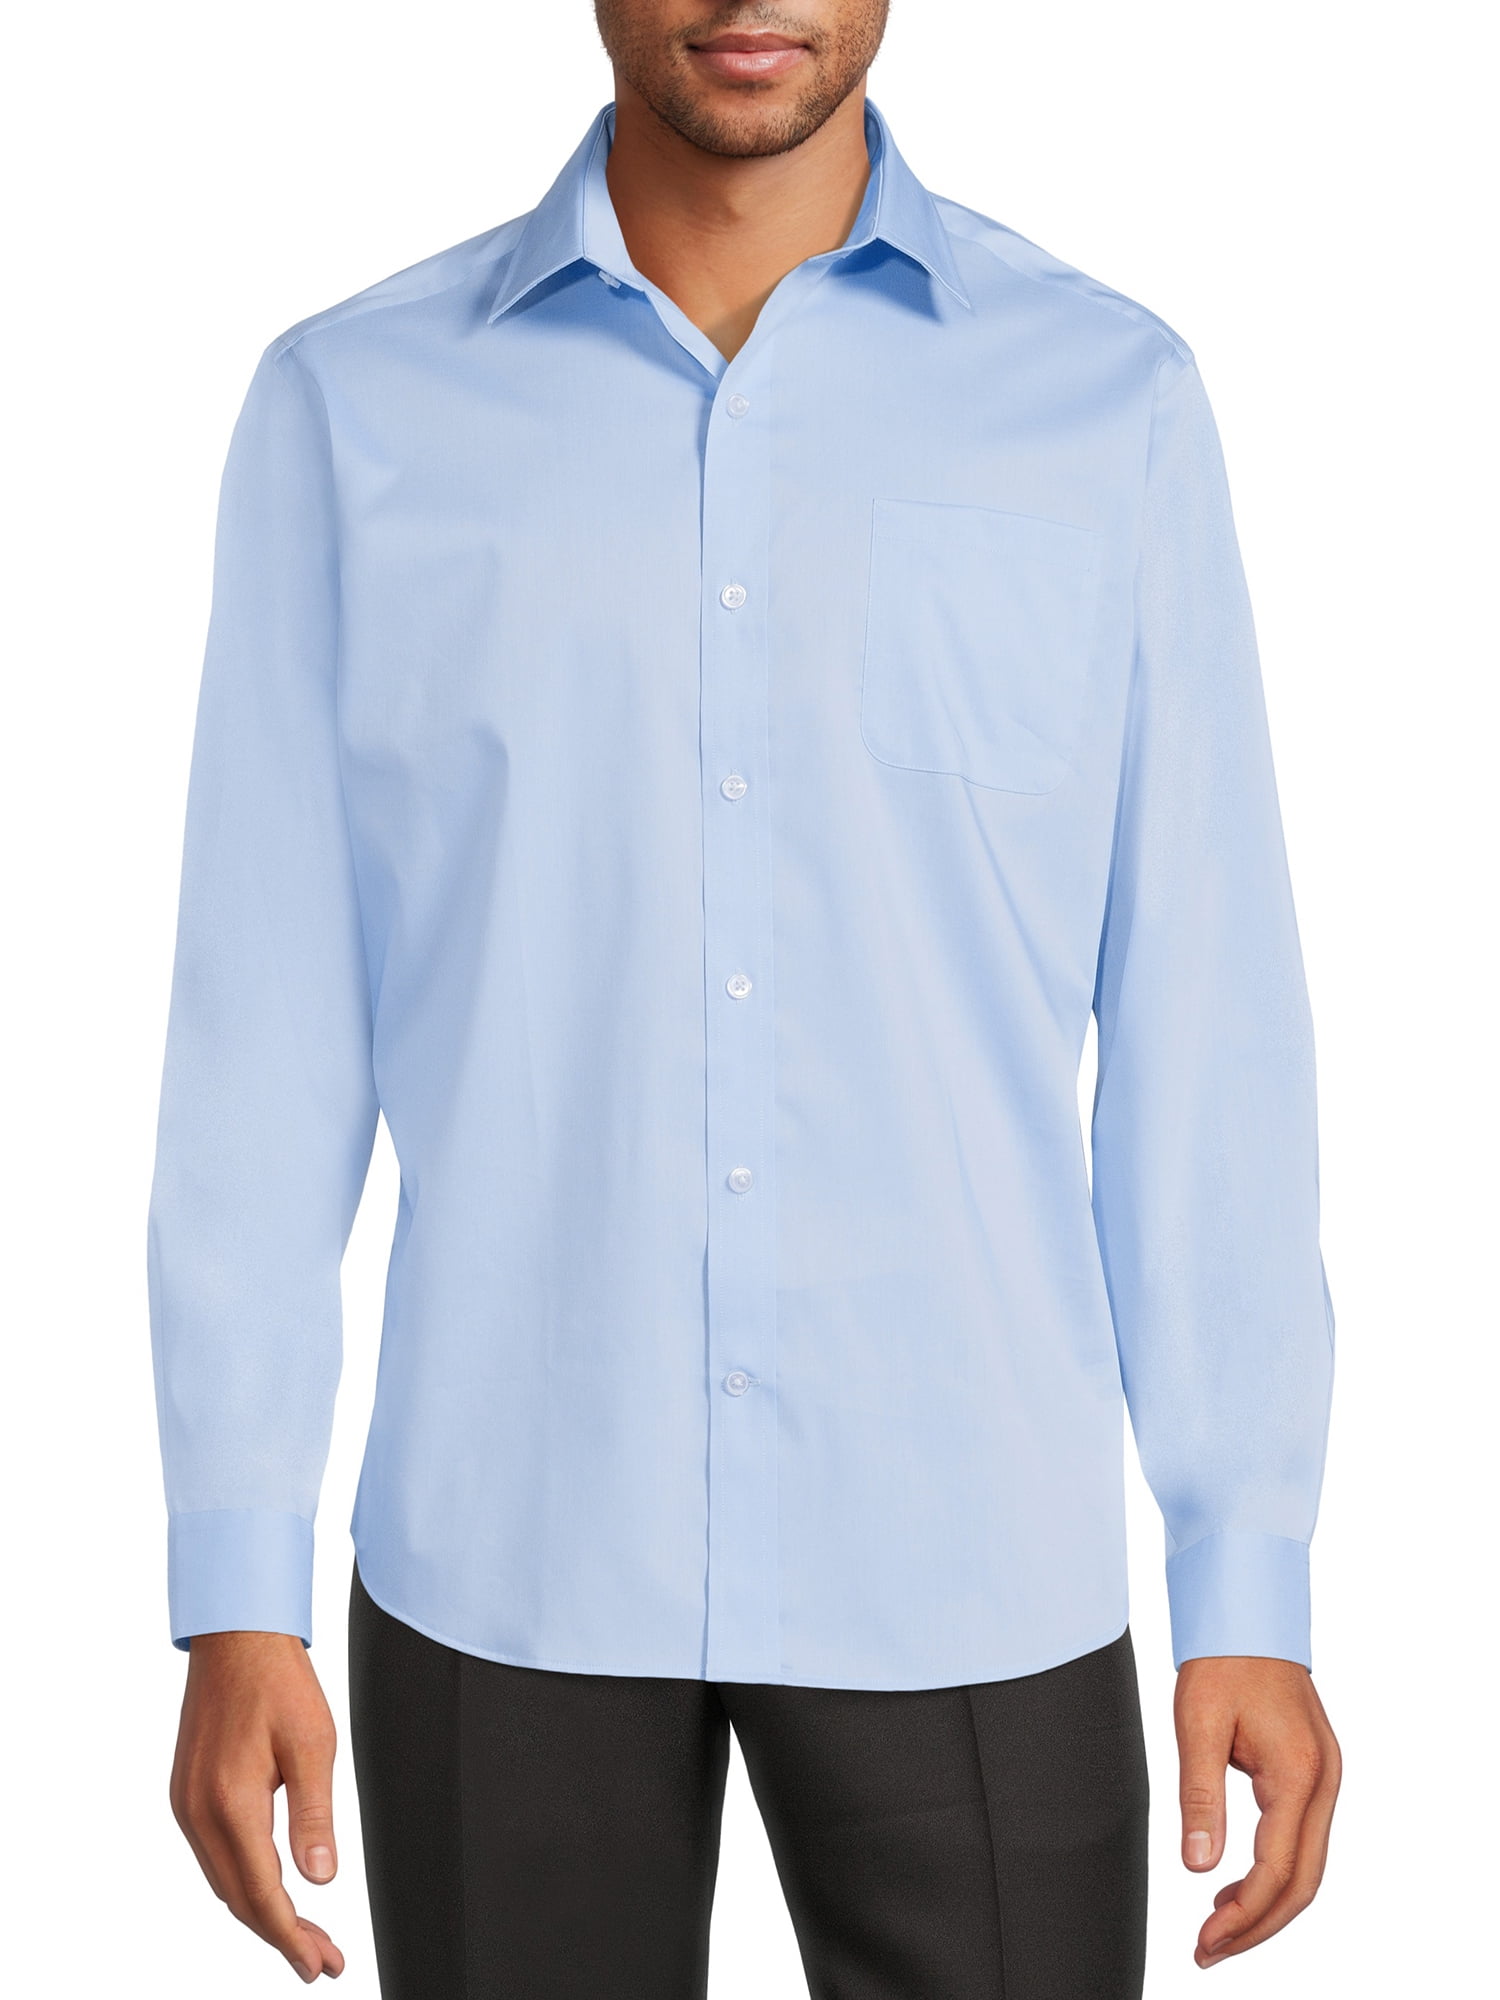 Regular Fit Long-sleeved Shirt - White - Men